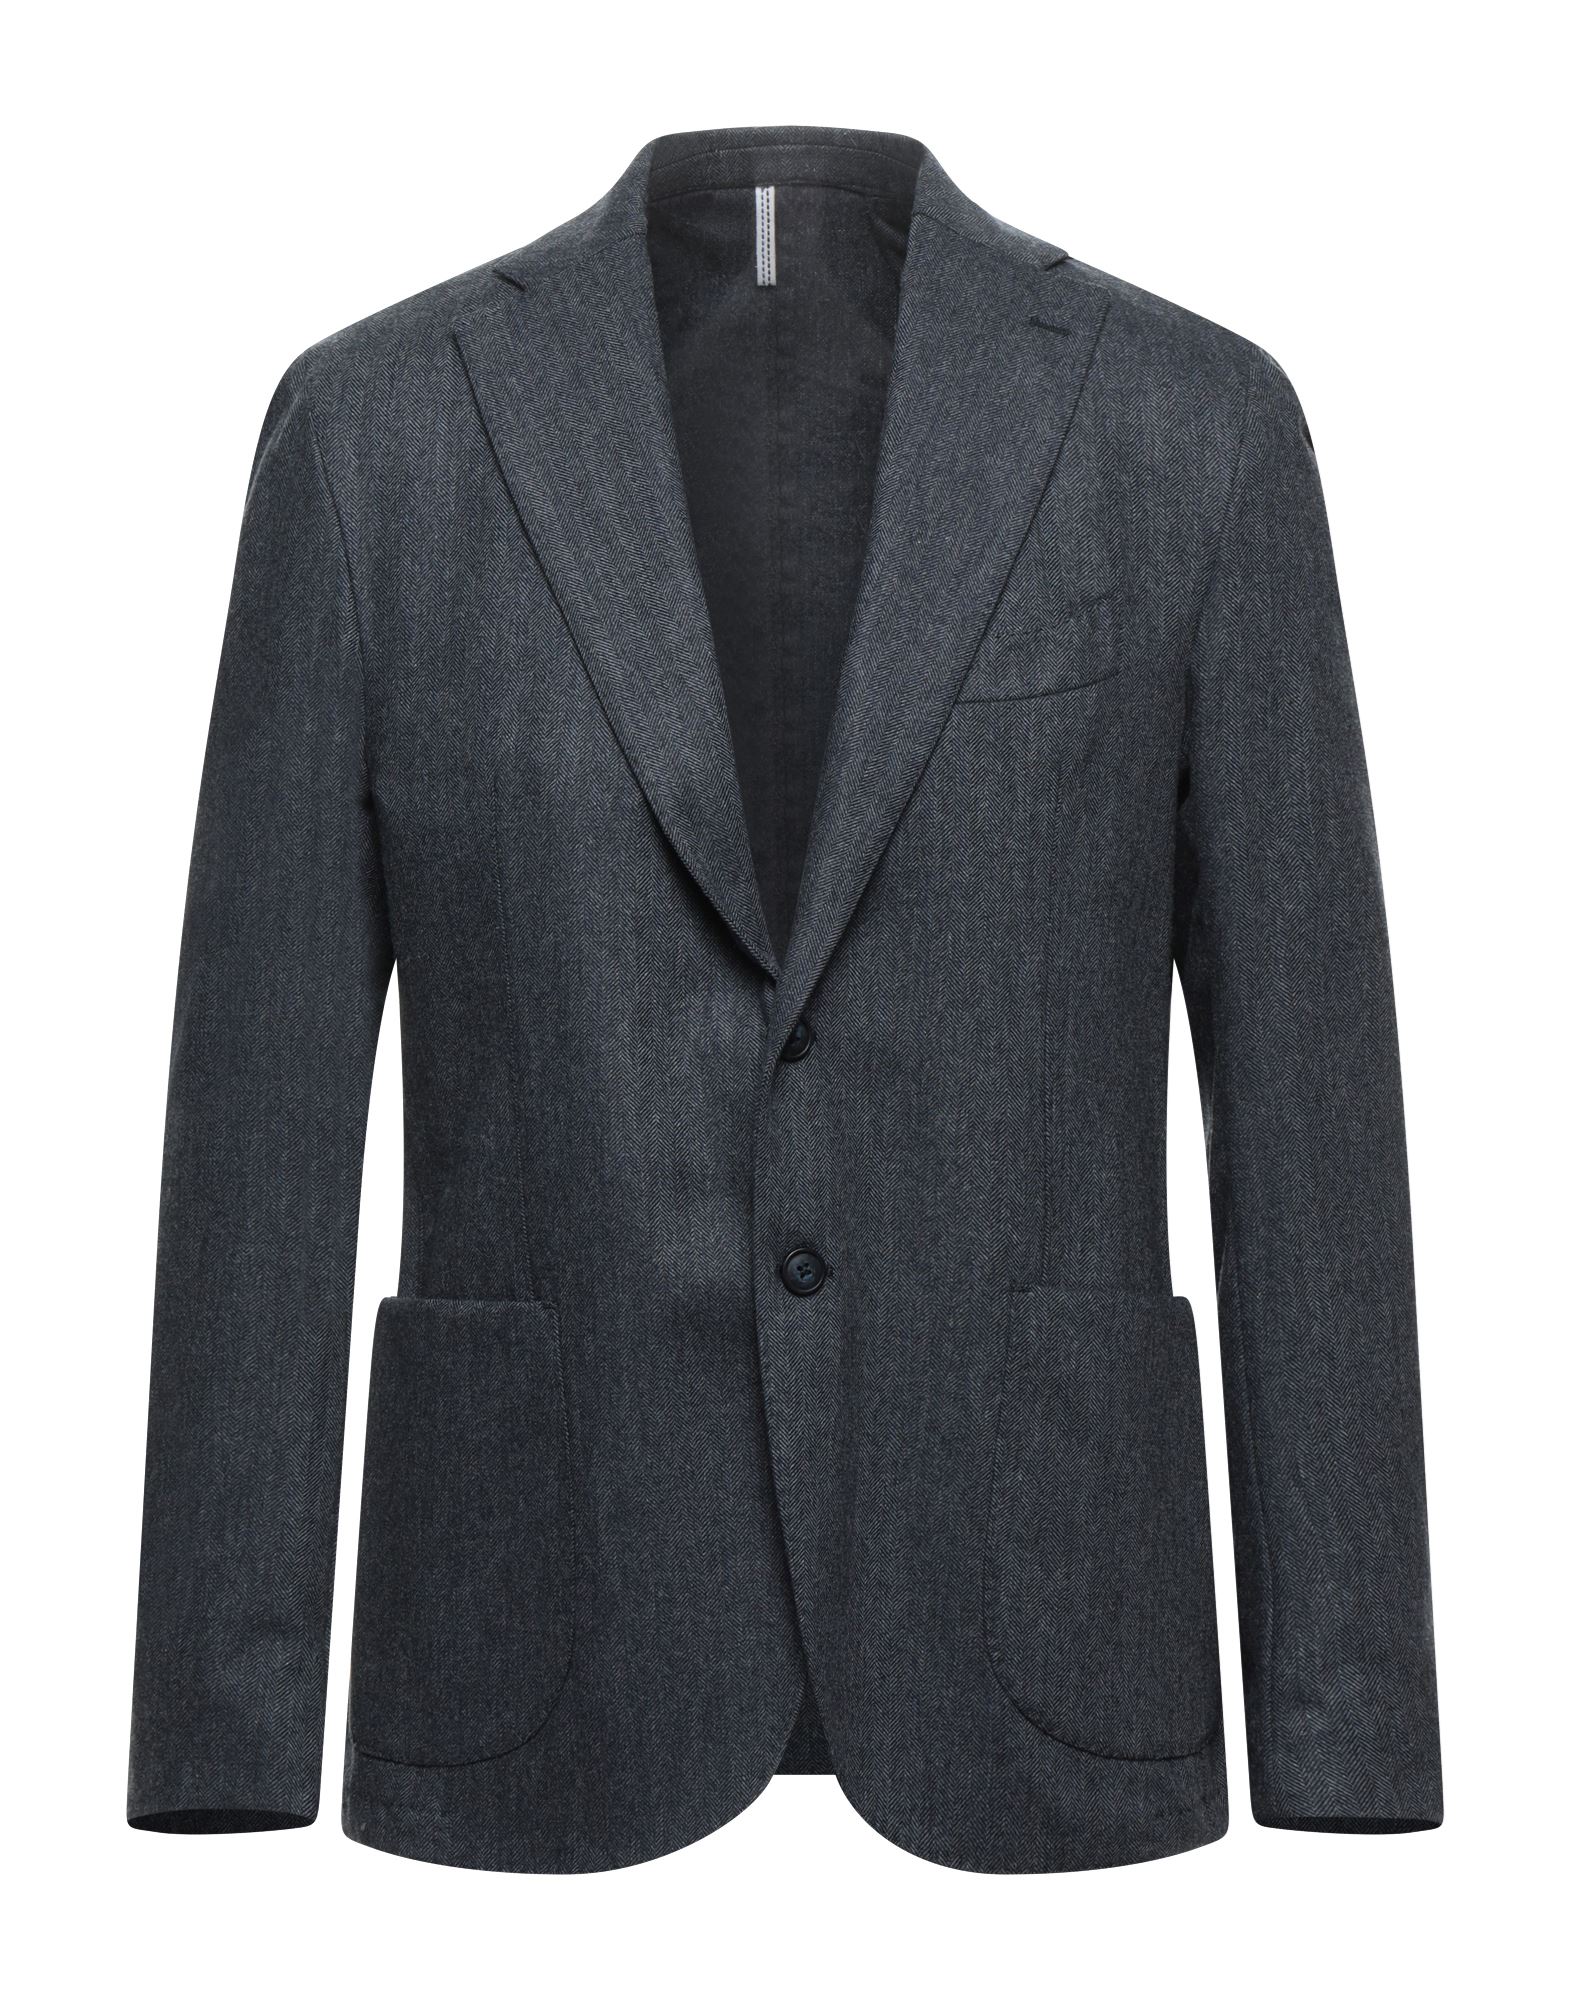 GAETANO AIELLO Suit jackets